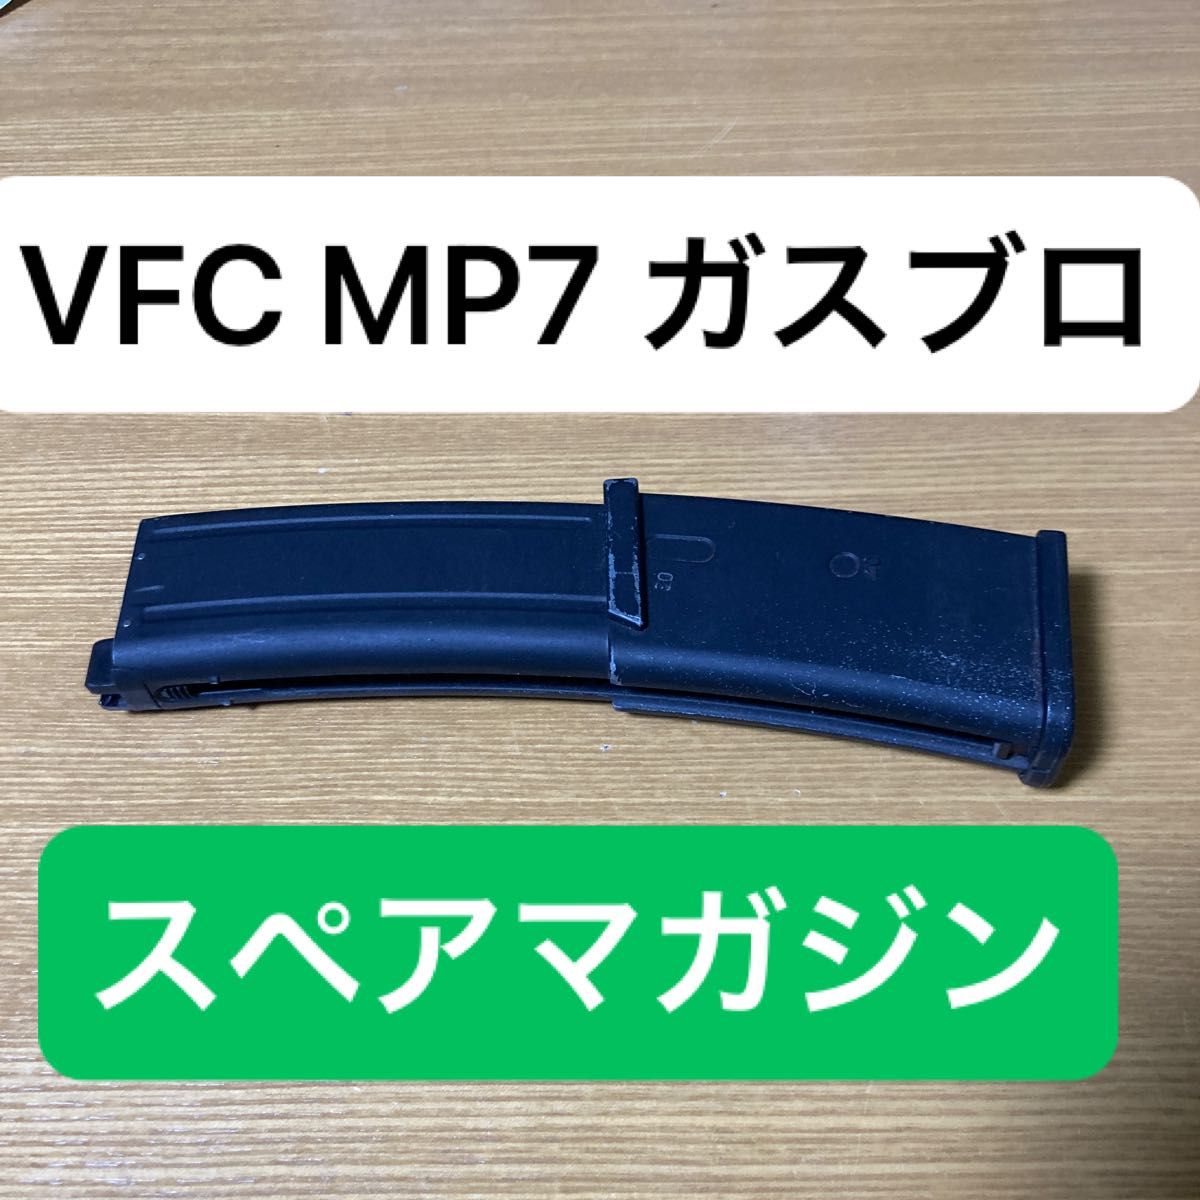 VFC MP7 ガス マガジン ガスブロ GBB  ガスブローバック mp7a1 a2